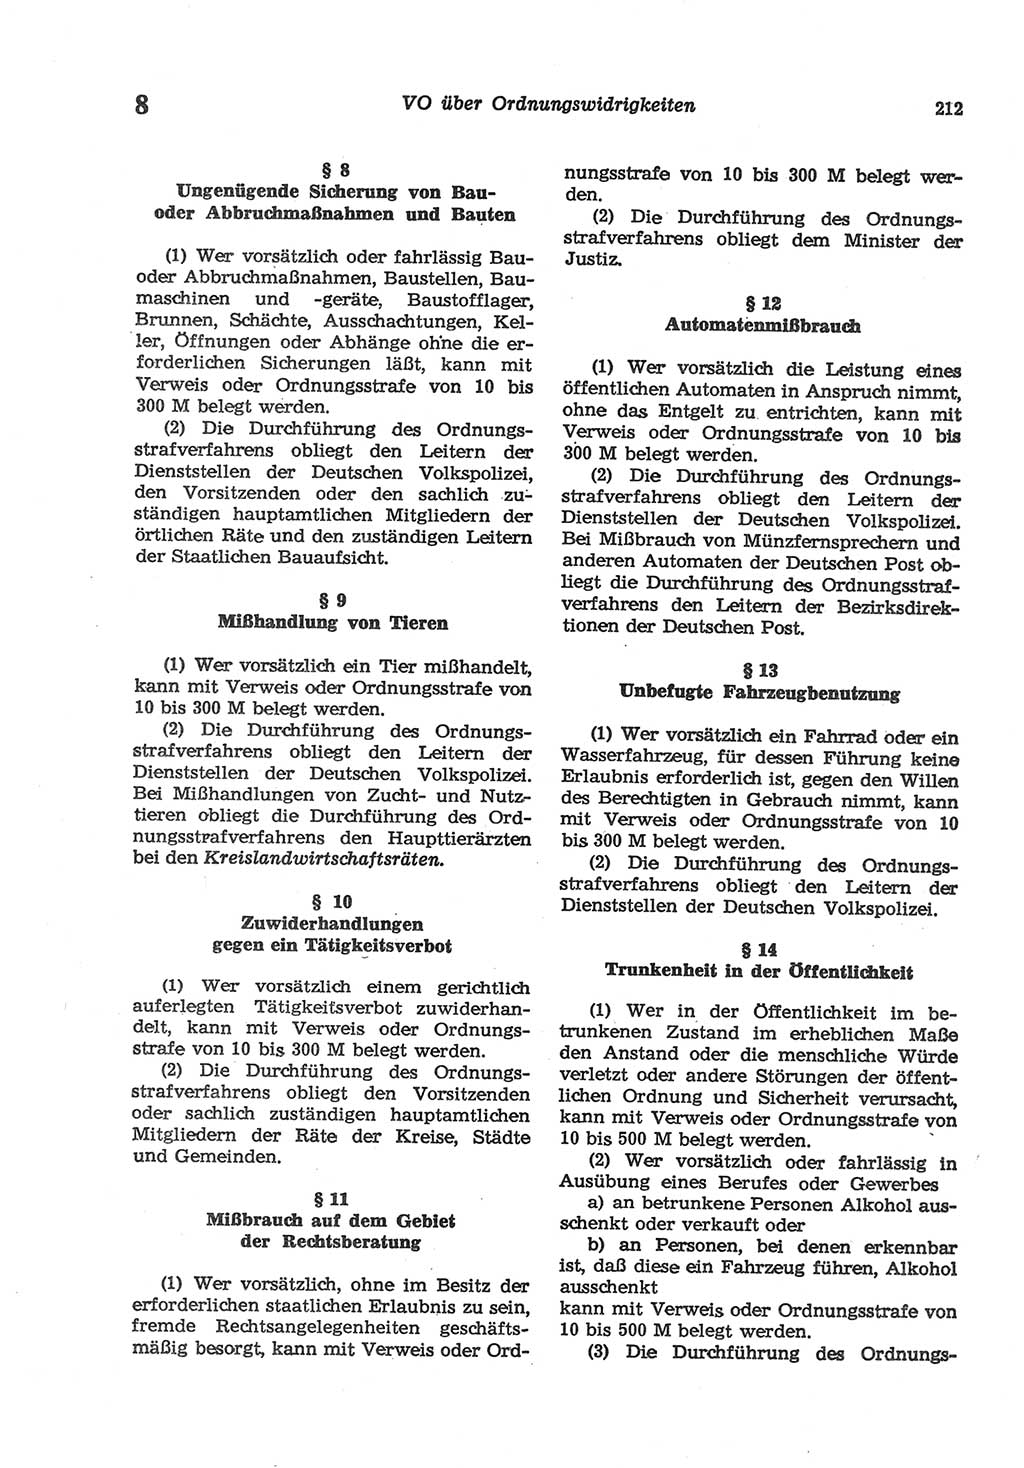 Strafgesetzbuch (StGB) der Deutschen Demokratischen Republik (DDR) und angrenzende Gesetze und Bestimmungen 1977, Seite 212 (StGB DDR Ges. Best. 1977, S. 212)